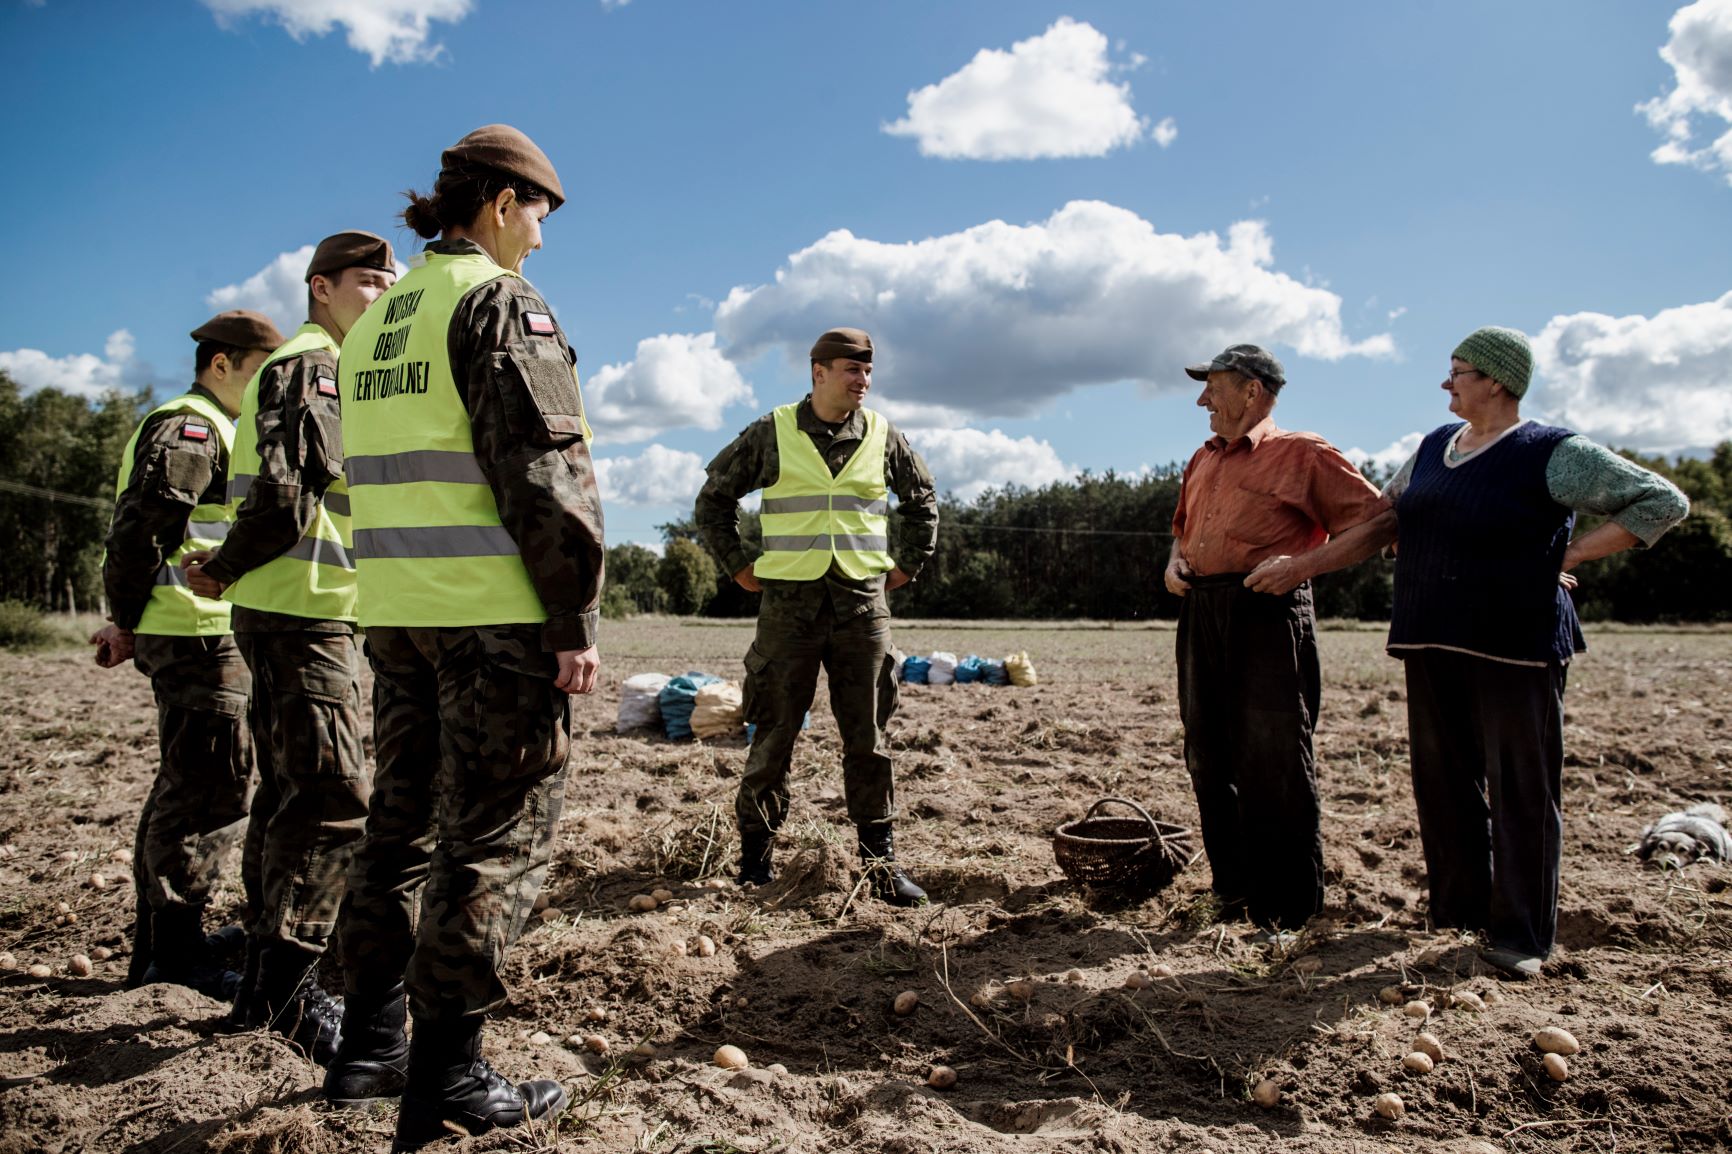 Szkoleniowy weekend lubelskich terytorialsów oraz „Silne wsparcie” dla mieszkańców lubelszczyzny (zdjęcia)